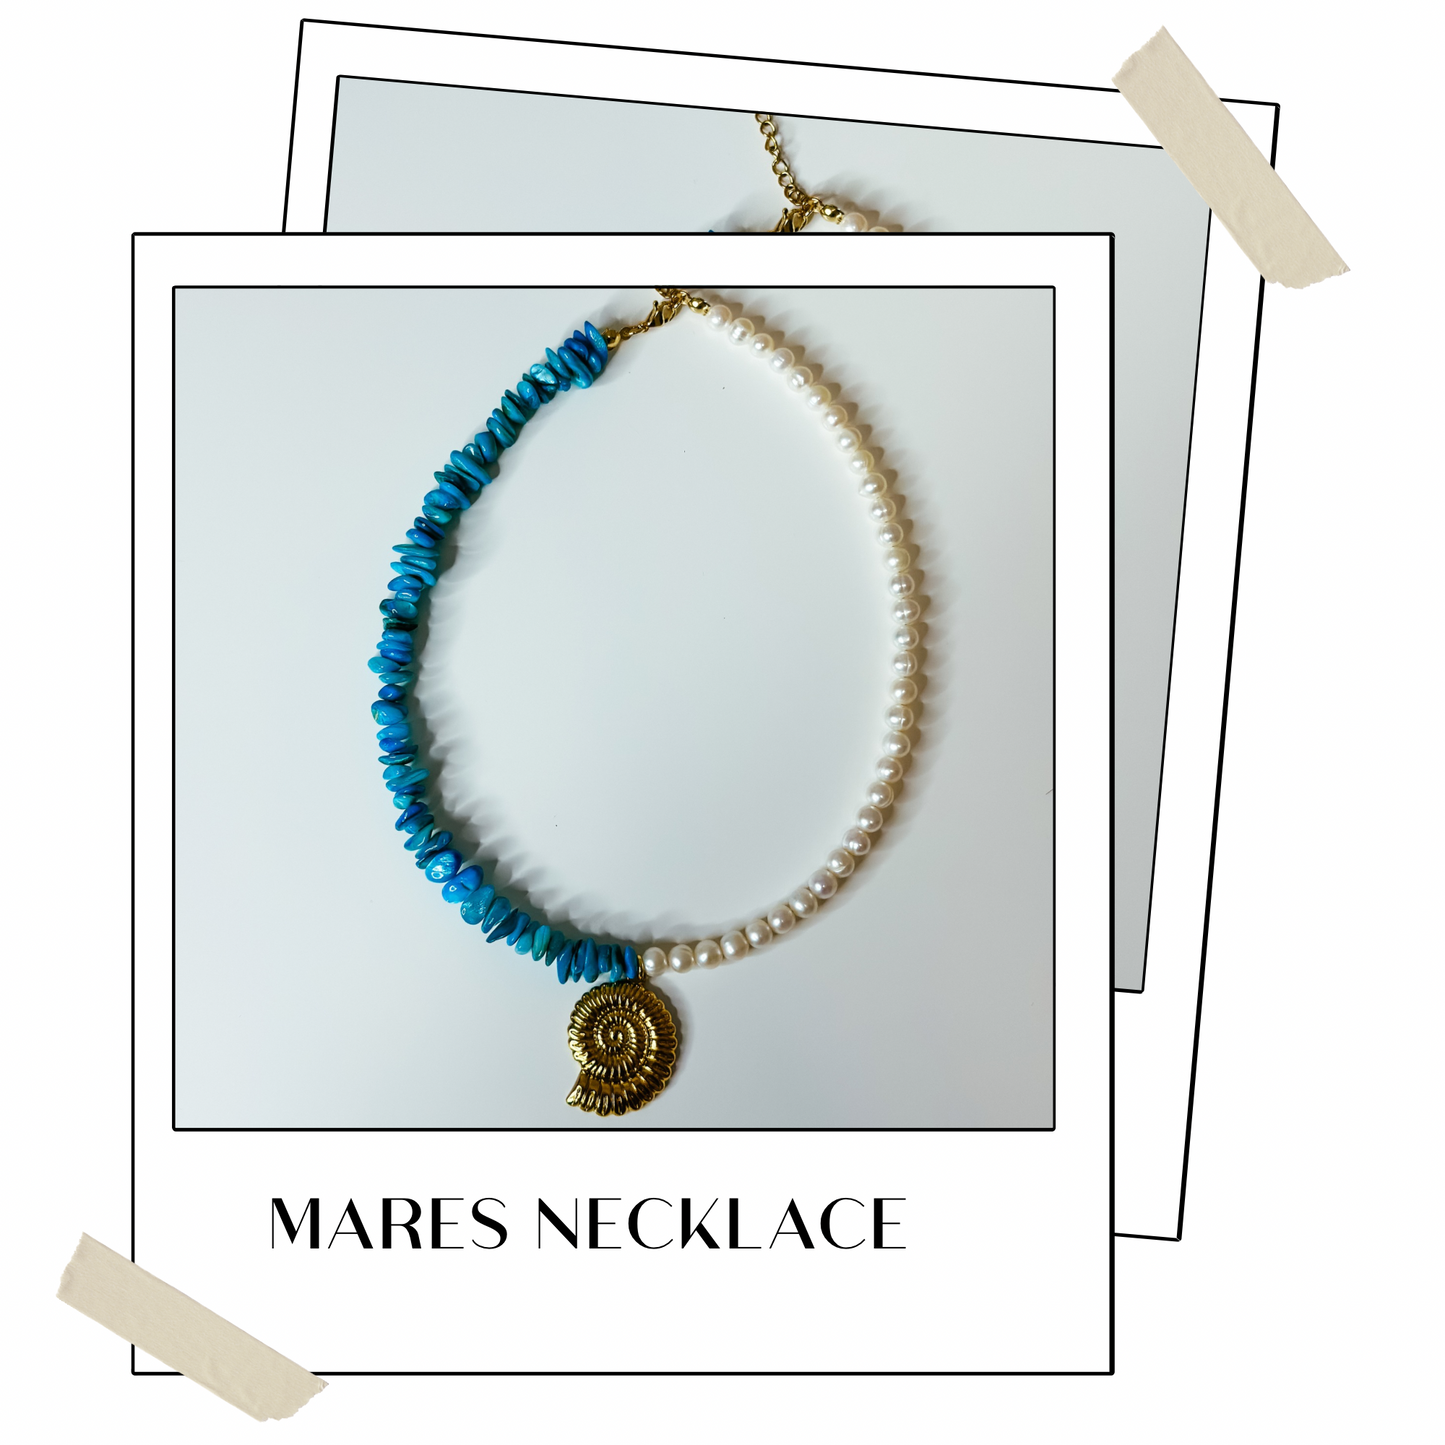 Mares necklace